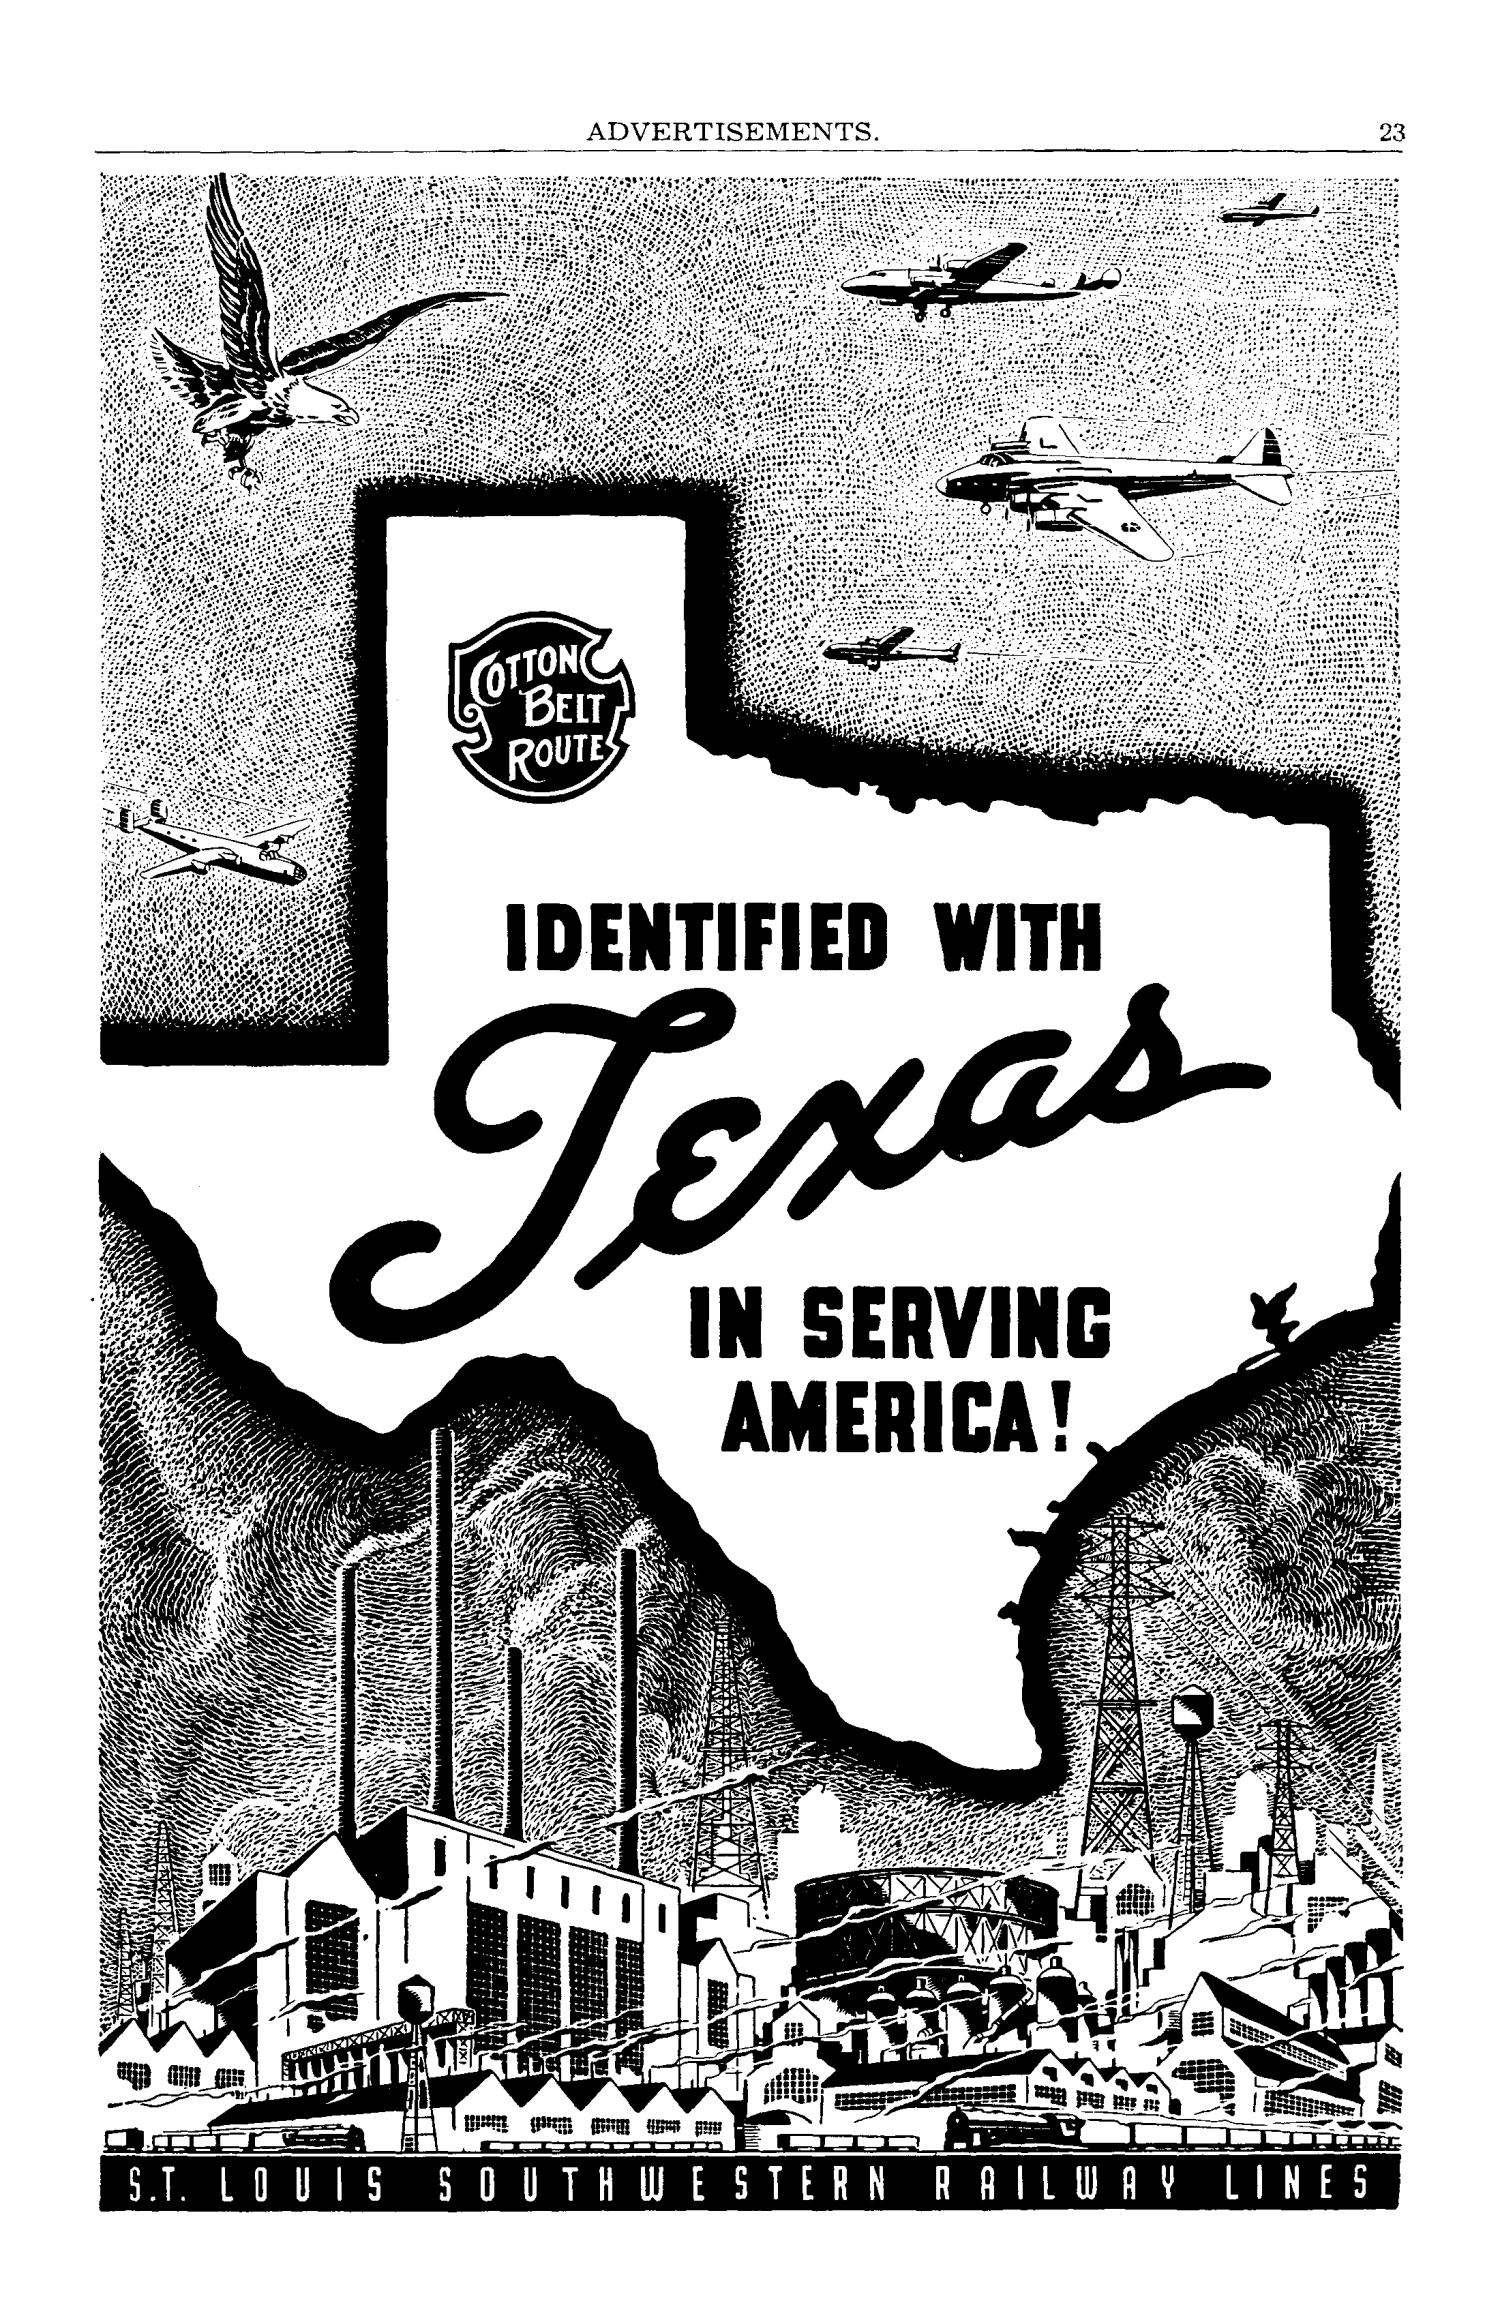 Texas Almanac, 1943-1944
                                                
                                                    23
                                                